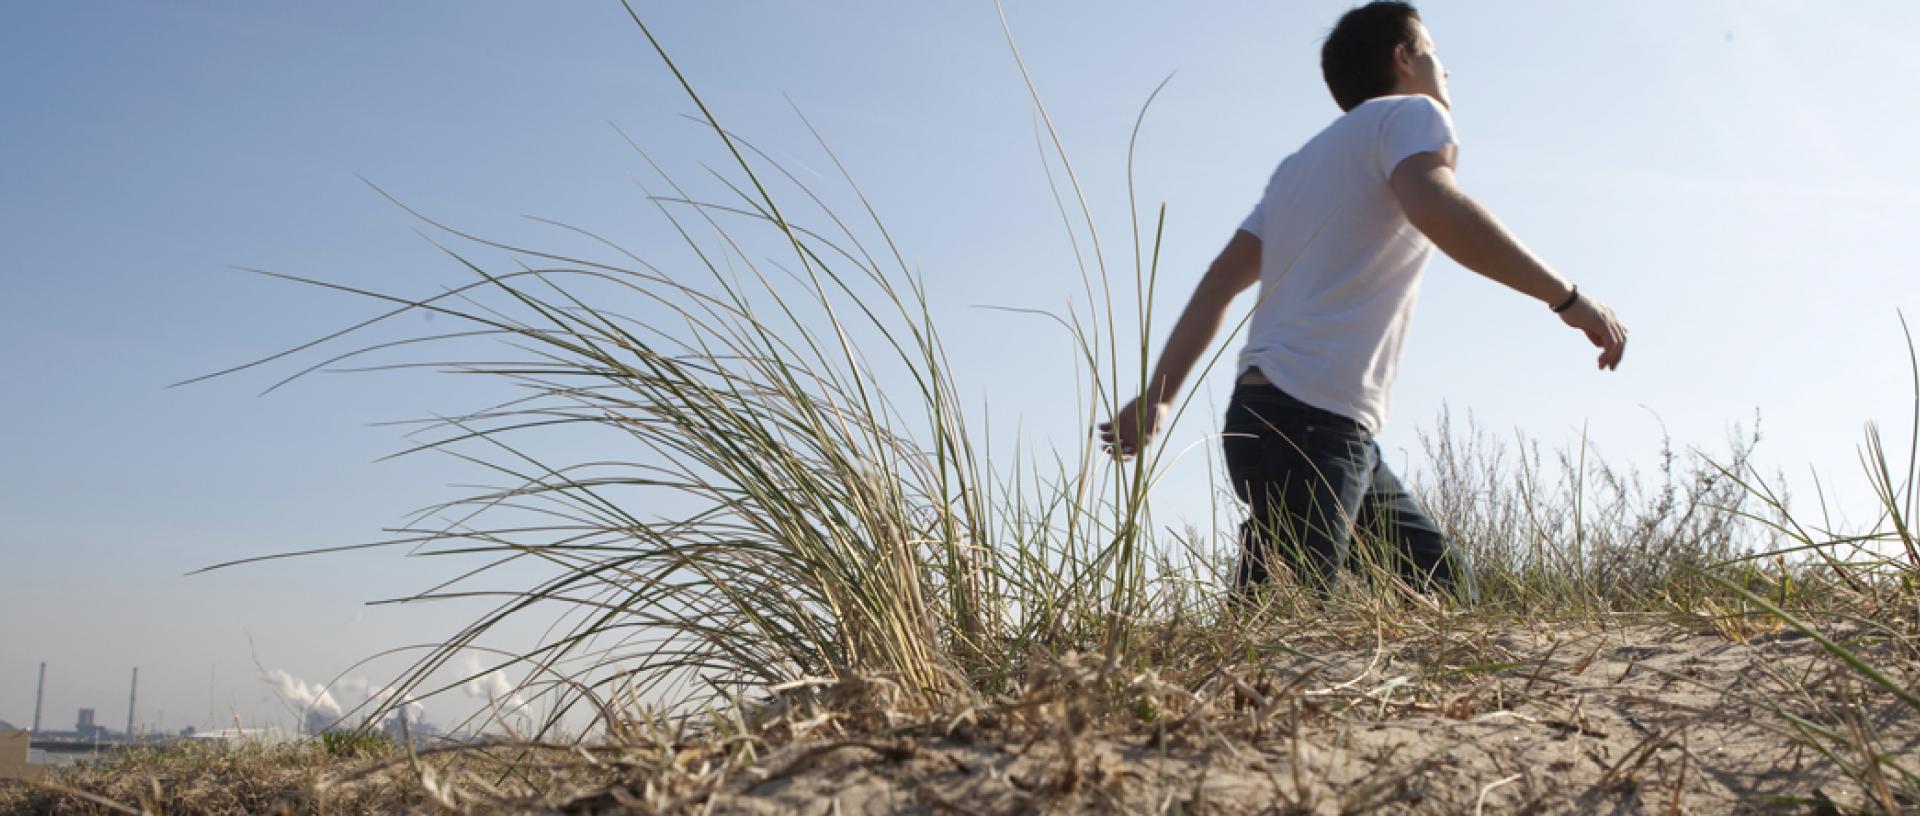 Man walking along sand dune